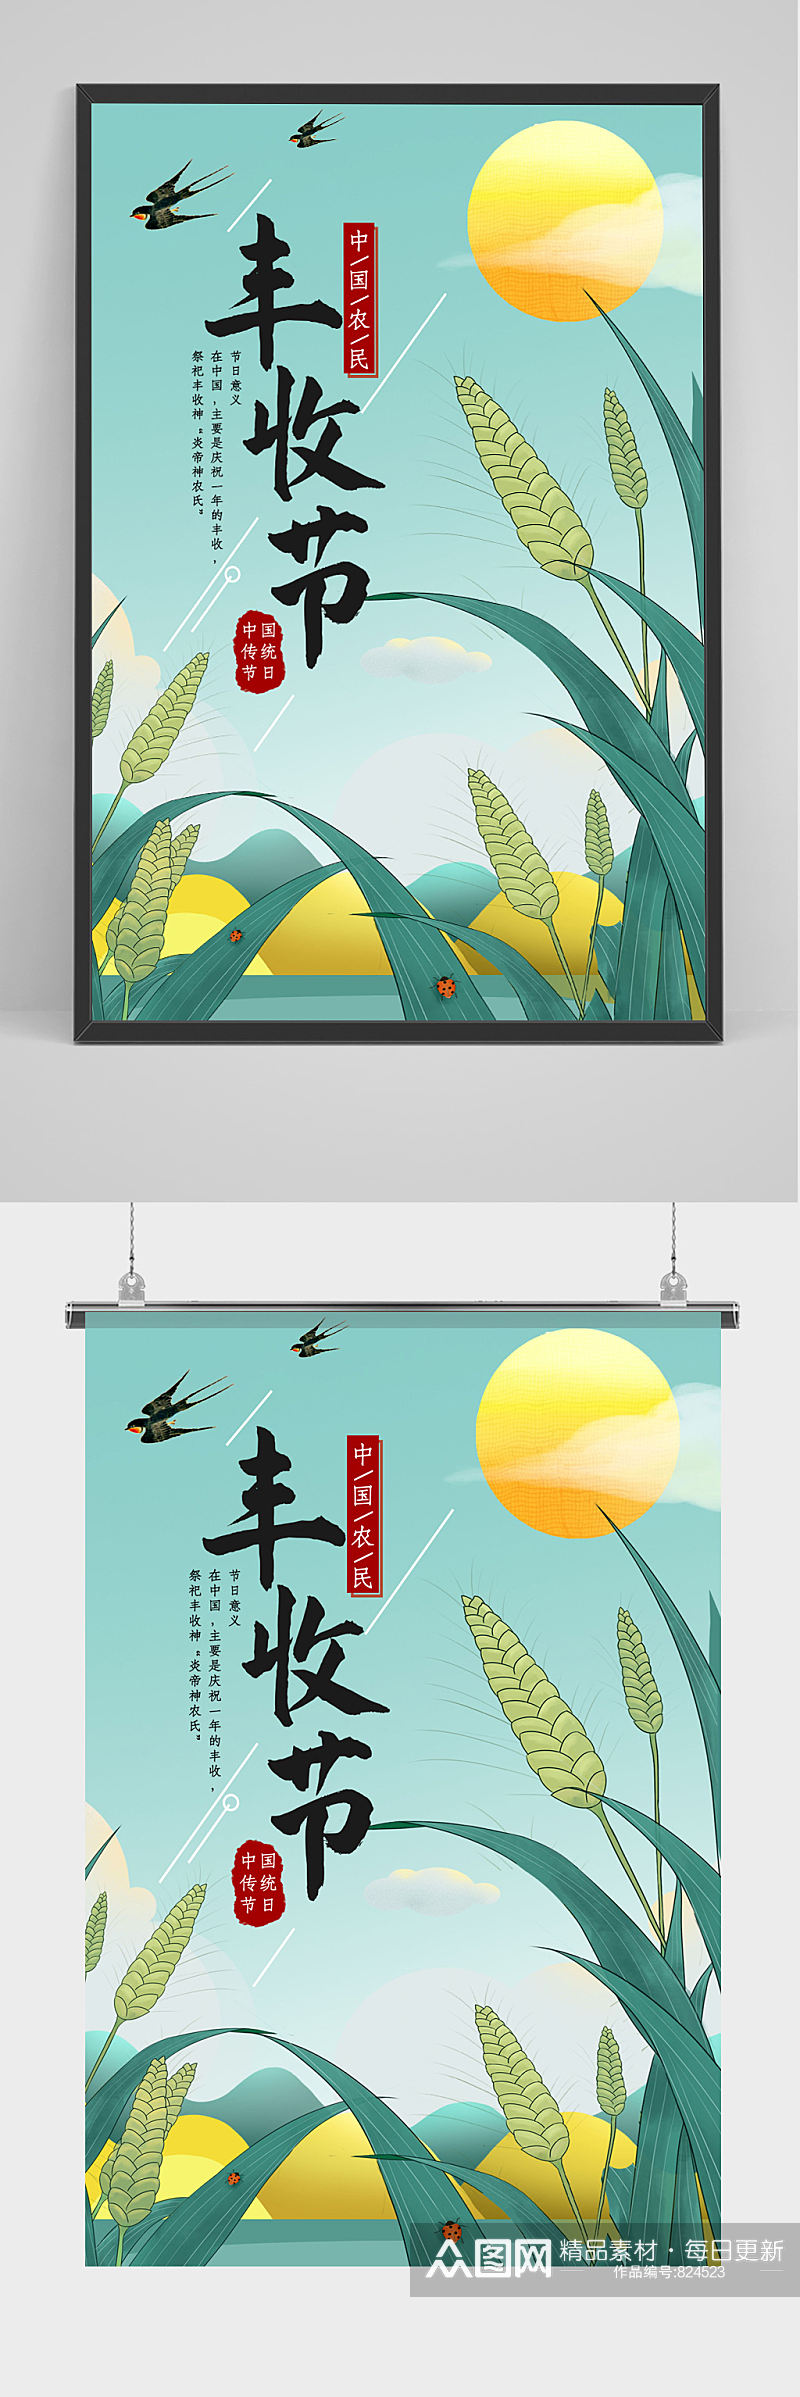 中国农民收割秋季丰收购物节印刷海报素材